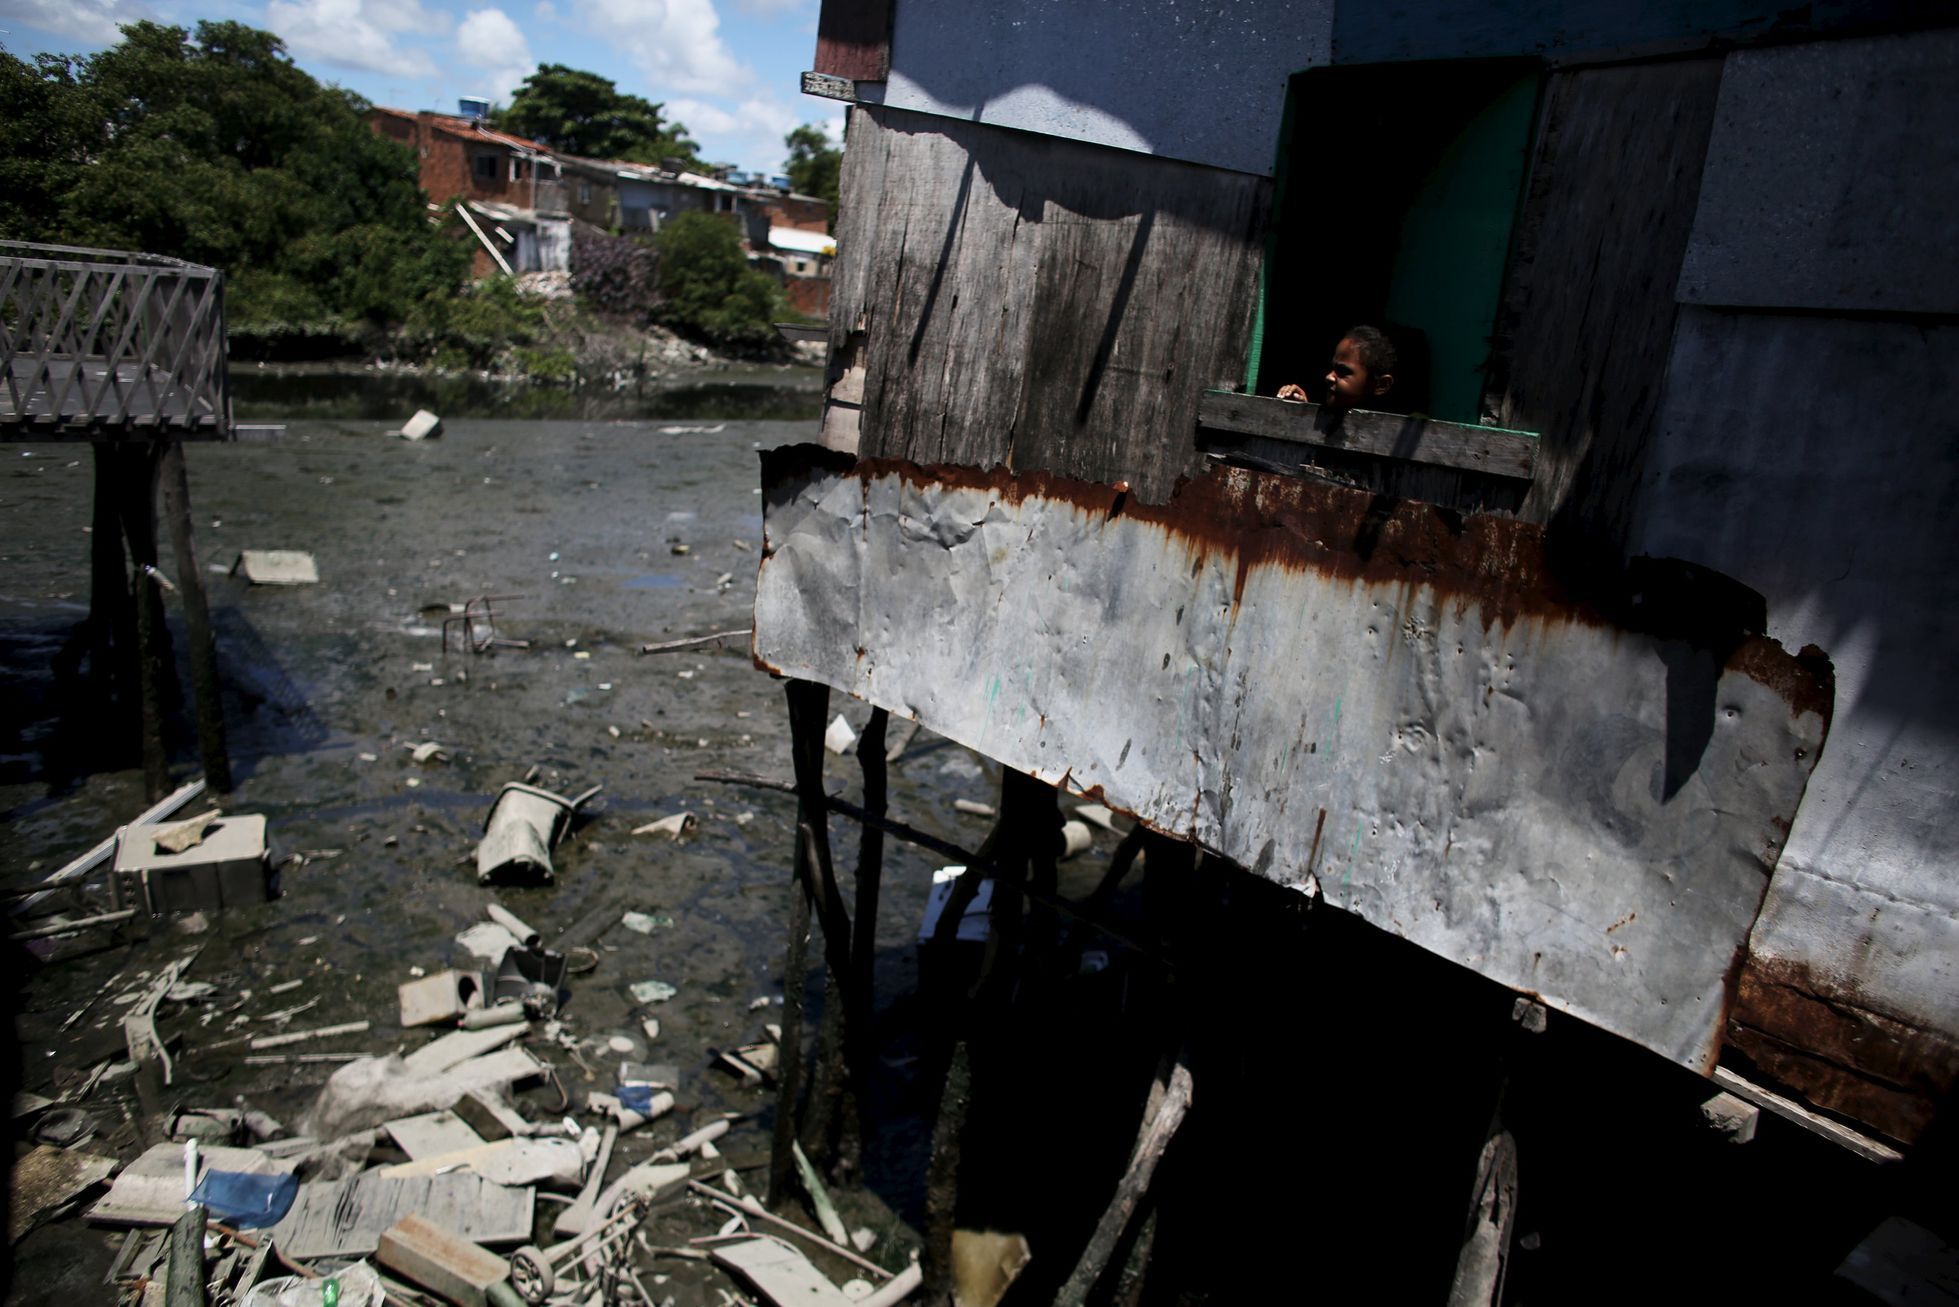 Recife - brazilská favela